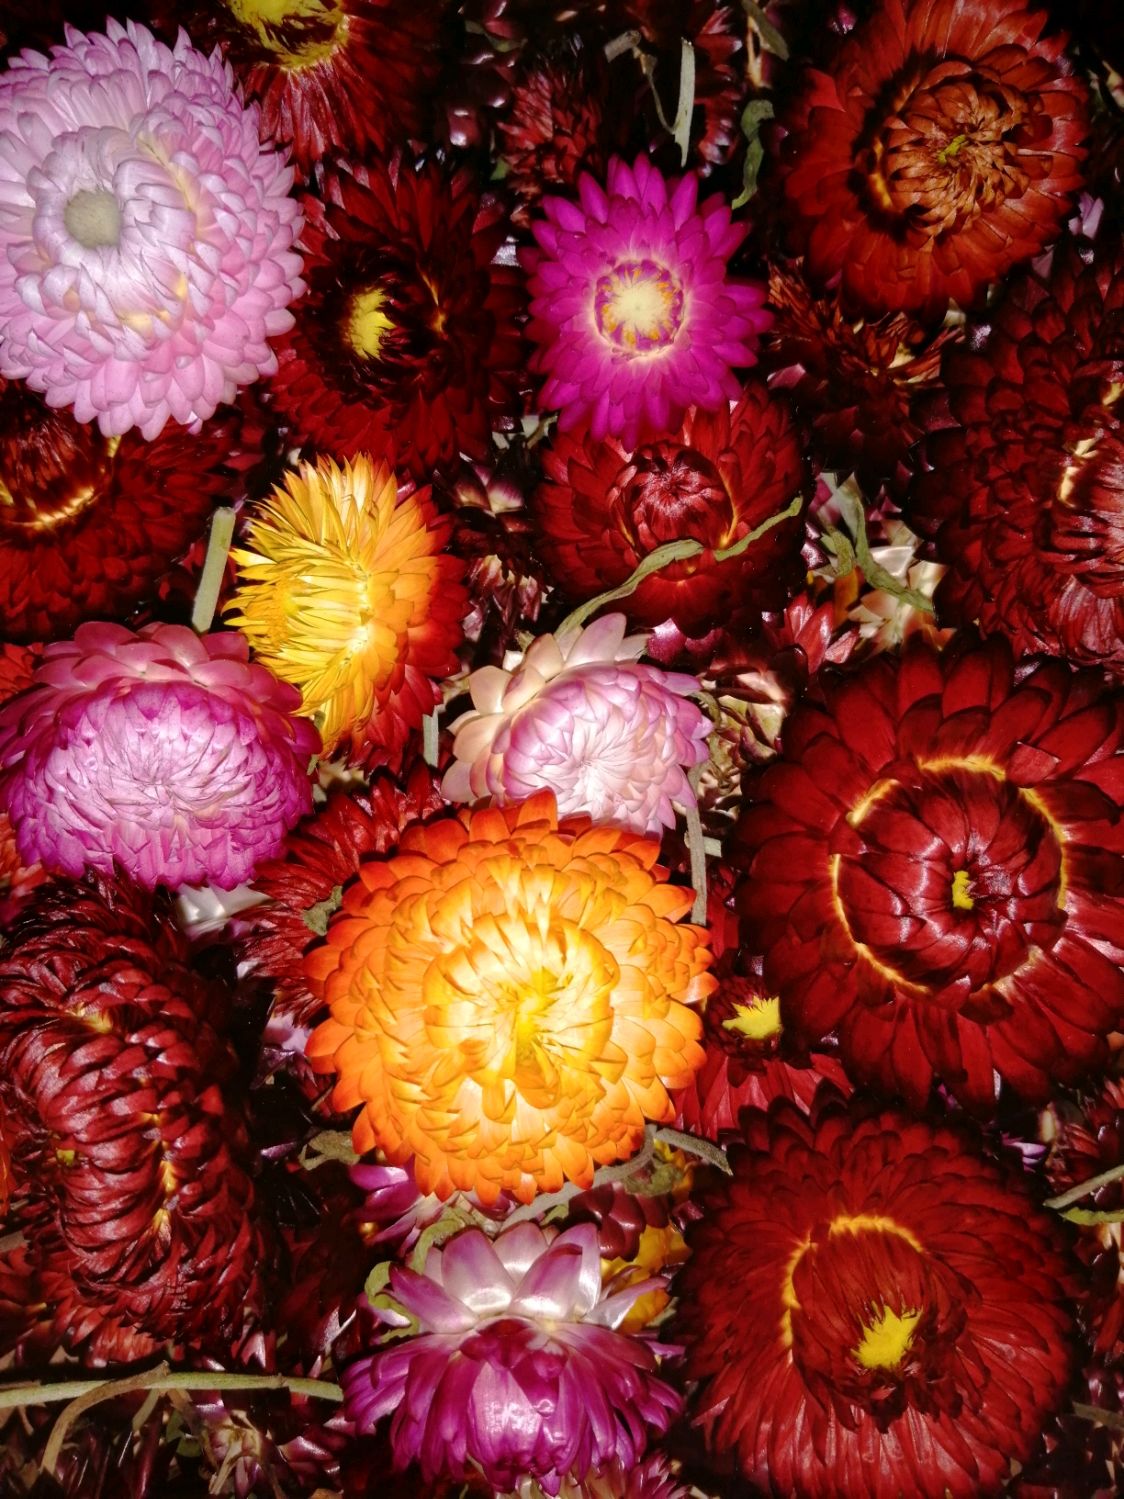 Сухоцветы фото с названиями гелихризум